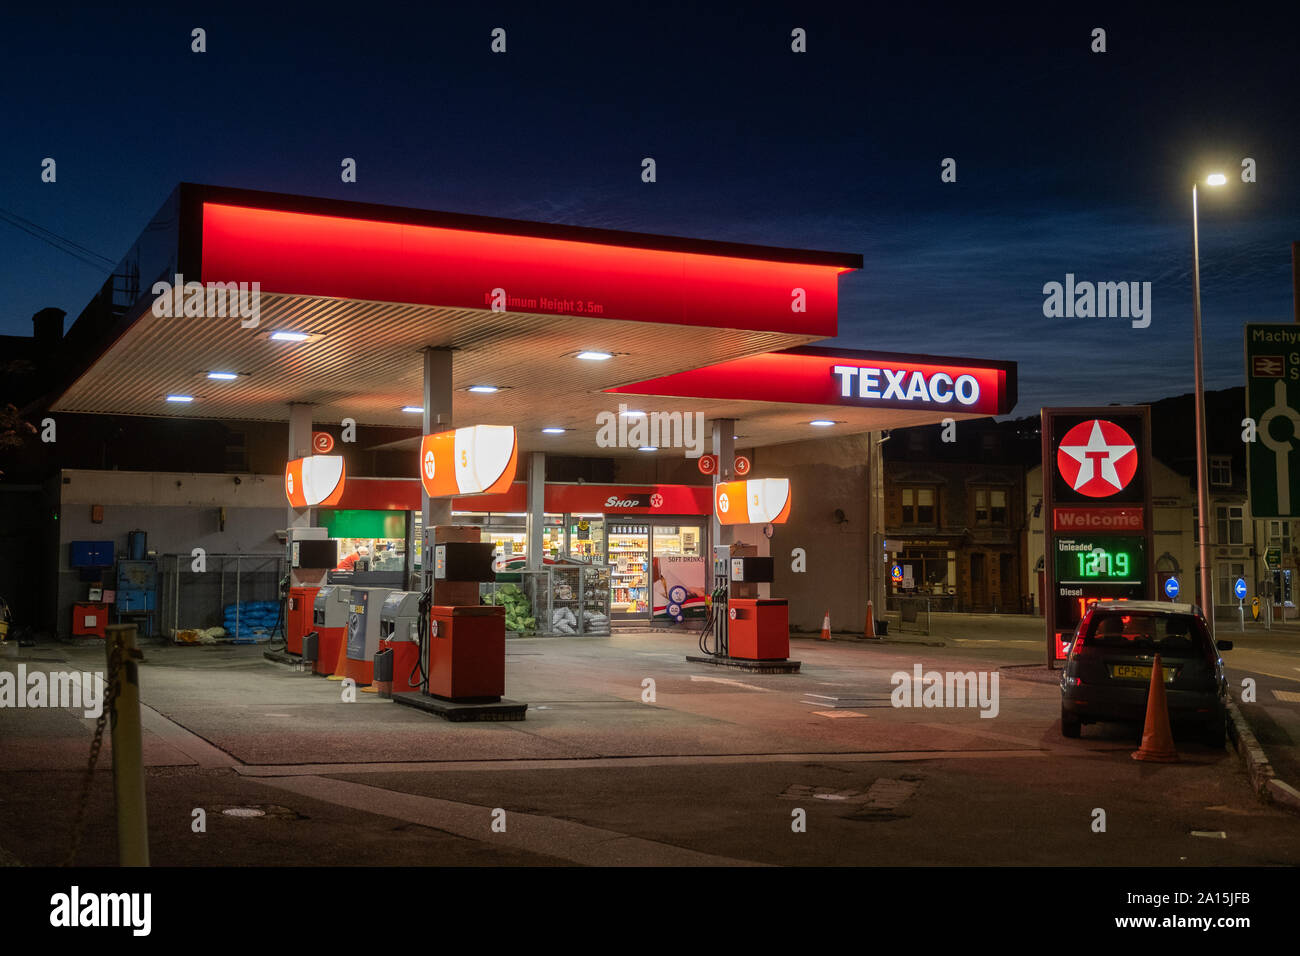 Una gasolinera Texaco gasolinera gasolinera en la noche, REINO UNIDO Foto de stock